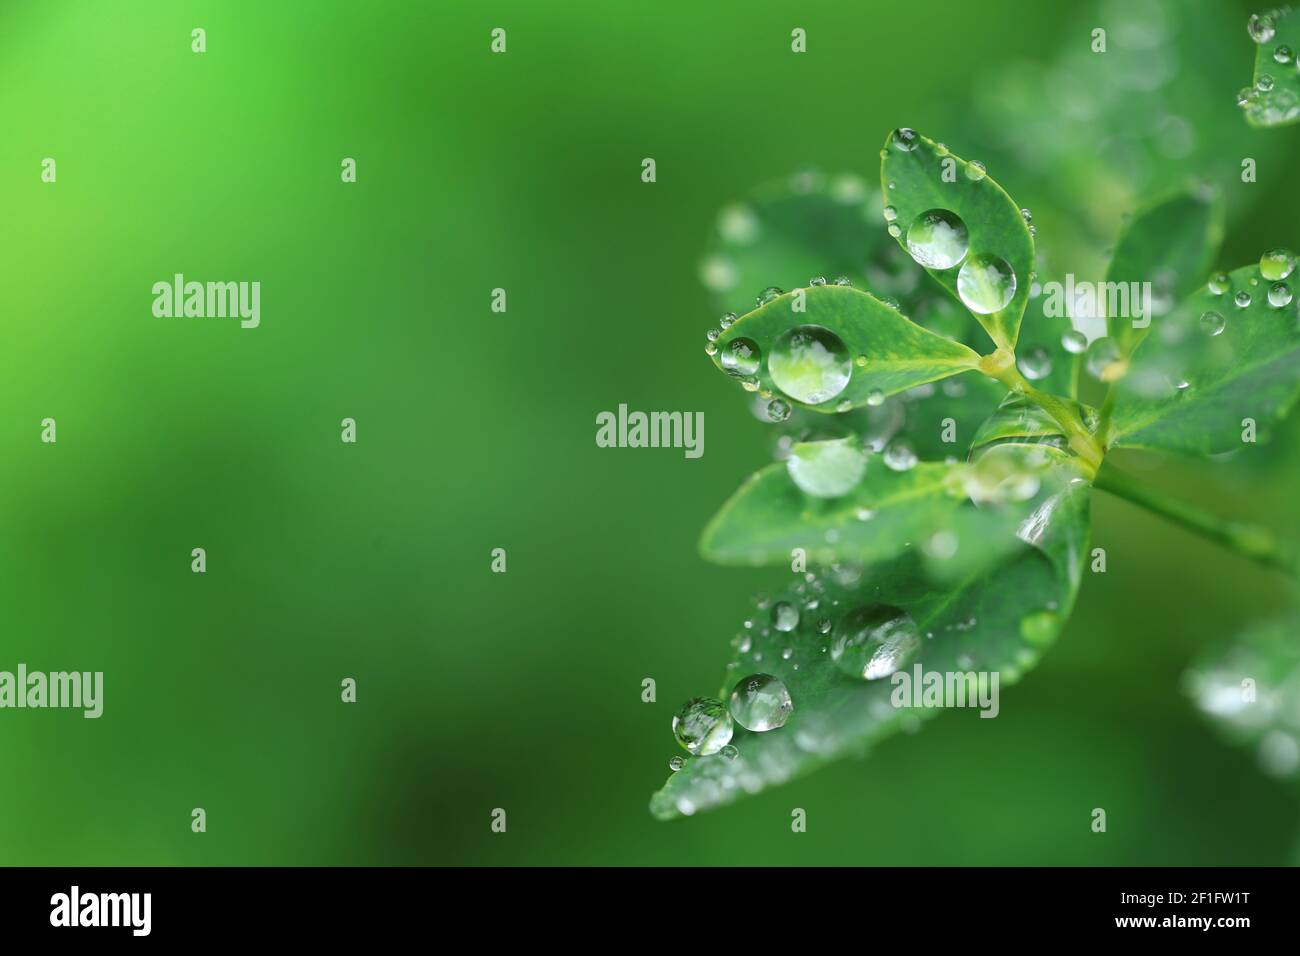 Día de la Tierra. Concepto ecológico. Hojas verdes con gotas de agua sobre fondo verde brillante borroso.hermoso fondo de la naturaleza.plantas verdes Foto de stock